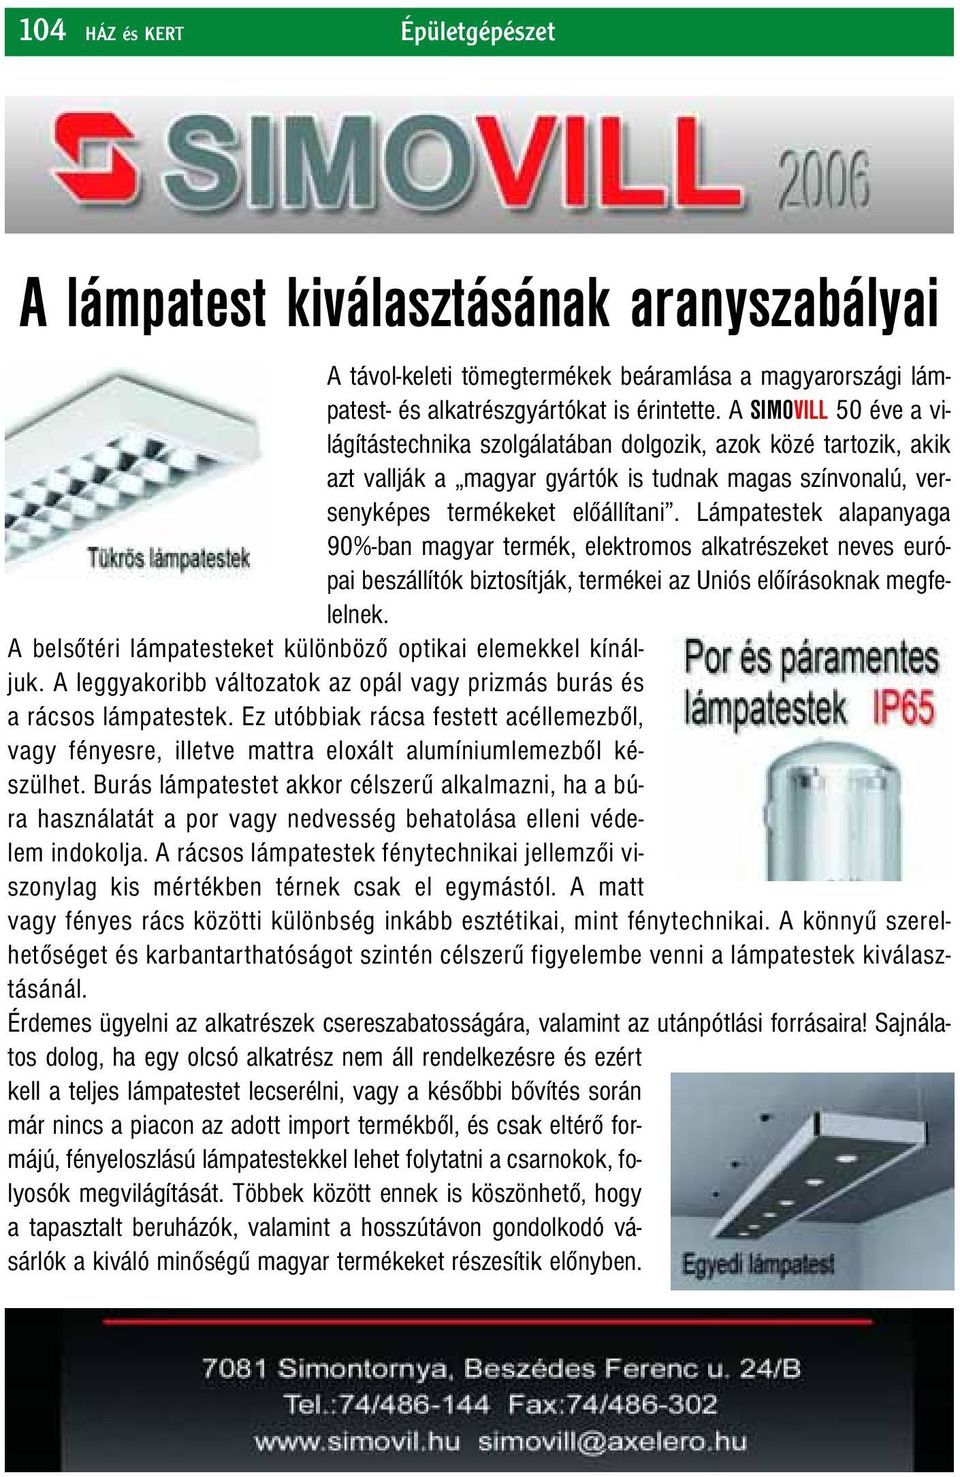 Lámpatestek alapanyaga 90%-ban magyar termék, elektromos alkatrészeket neves európai beszállítók biztosítják, termékei az Uniós előírásoknak megfelelnek.